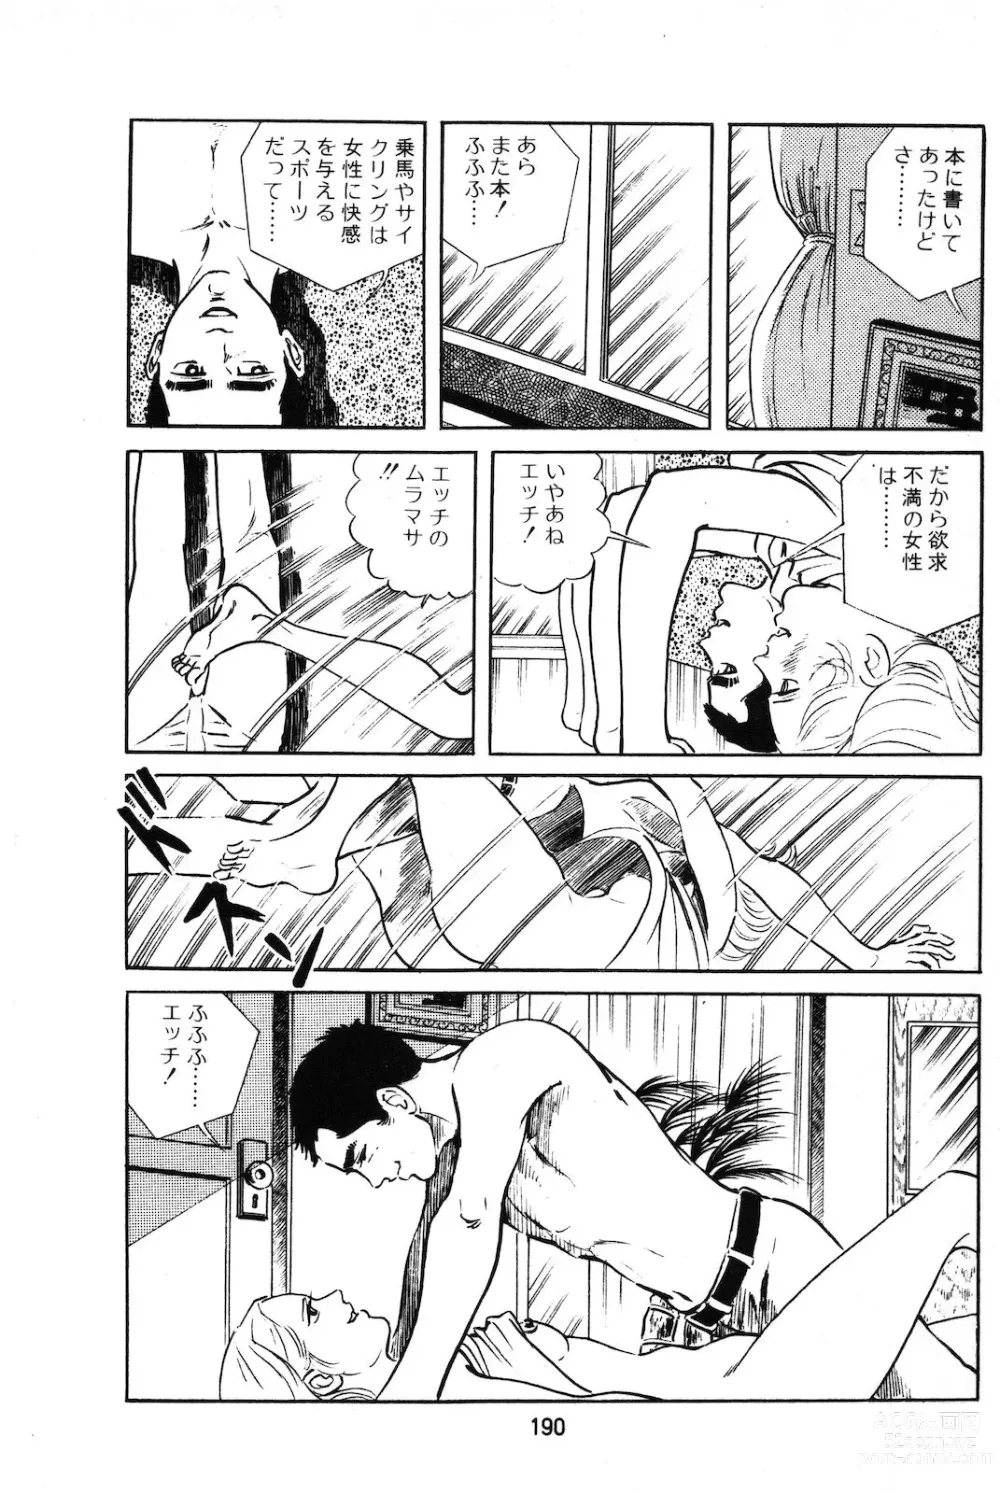 Page 15 of manga Koukousei Burai Hikae 1-8